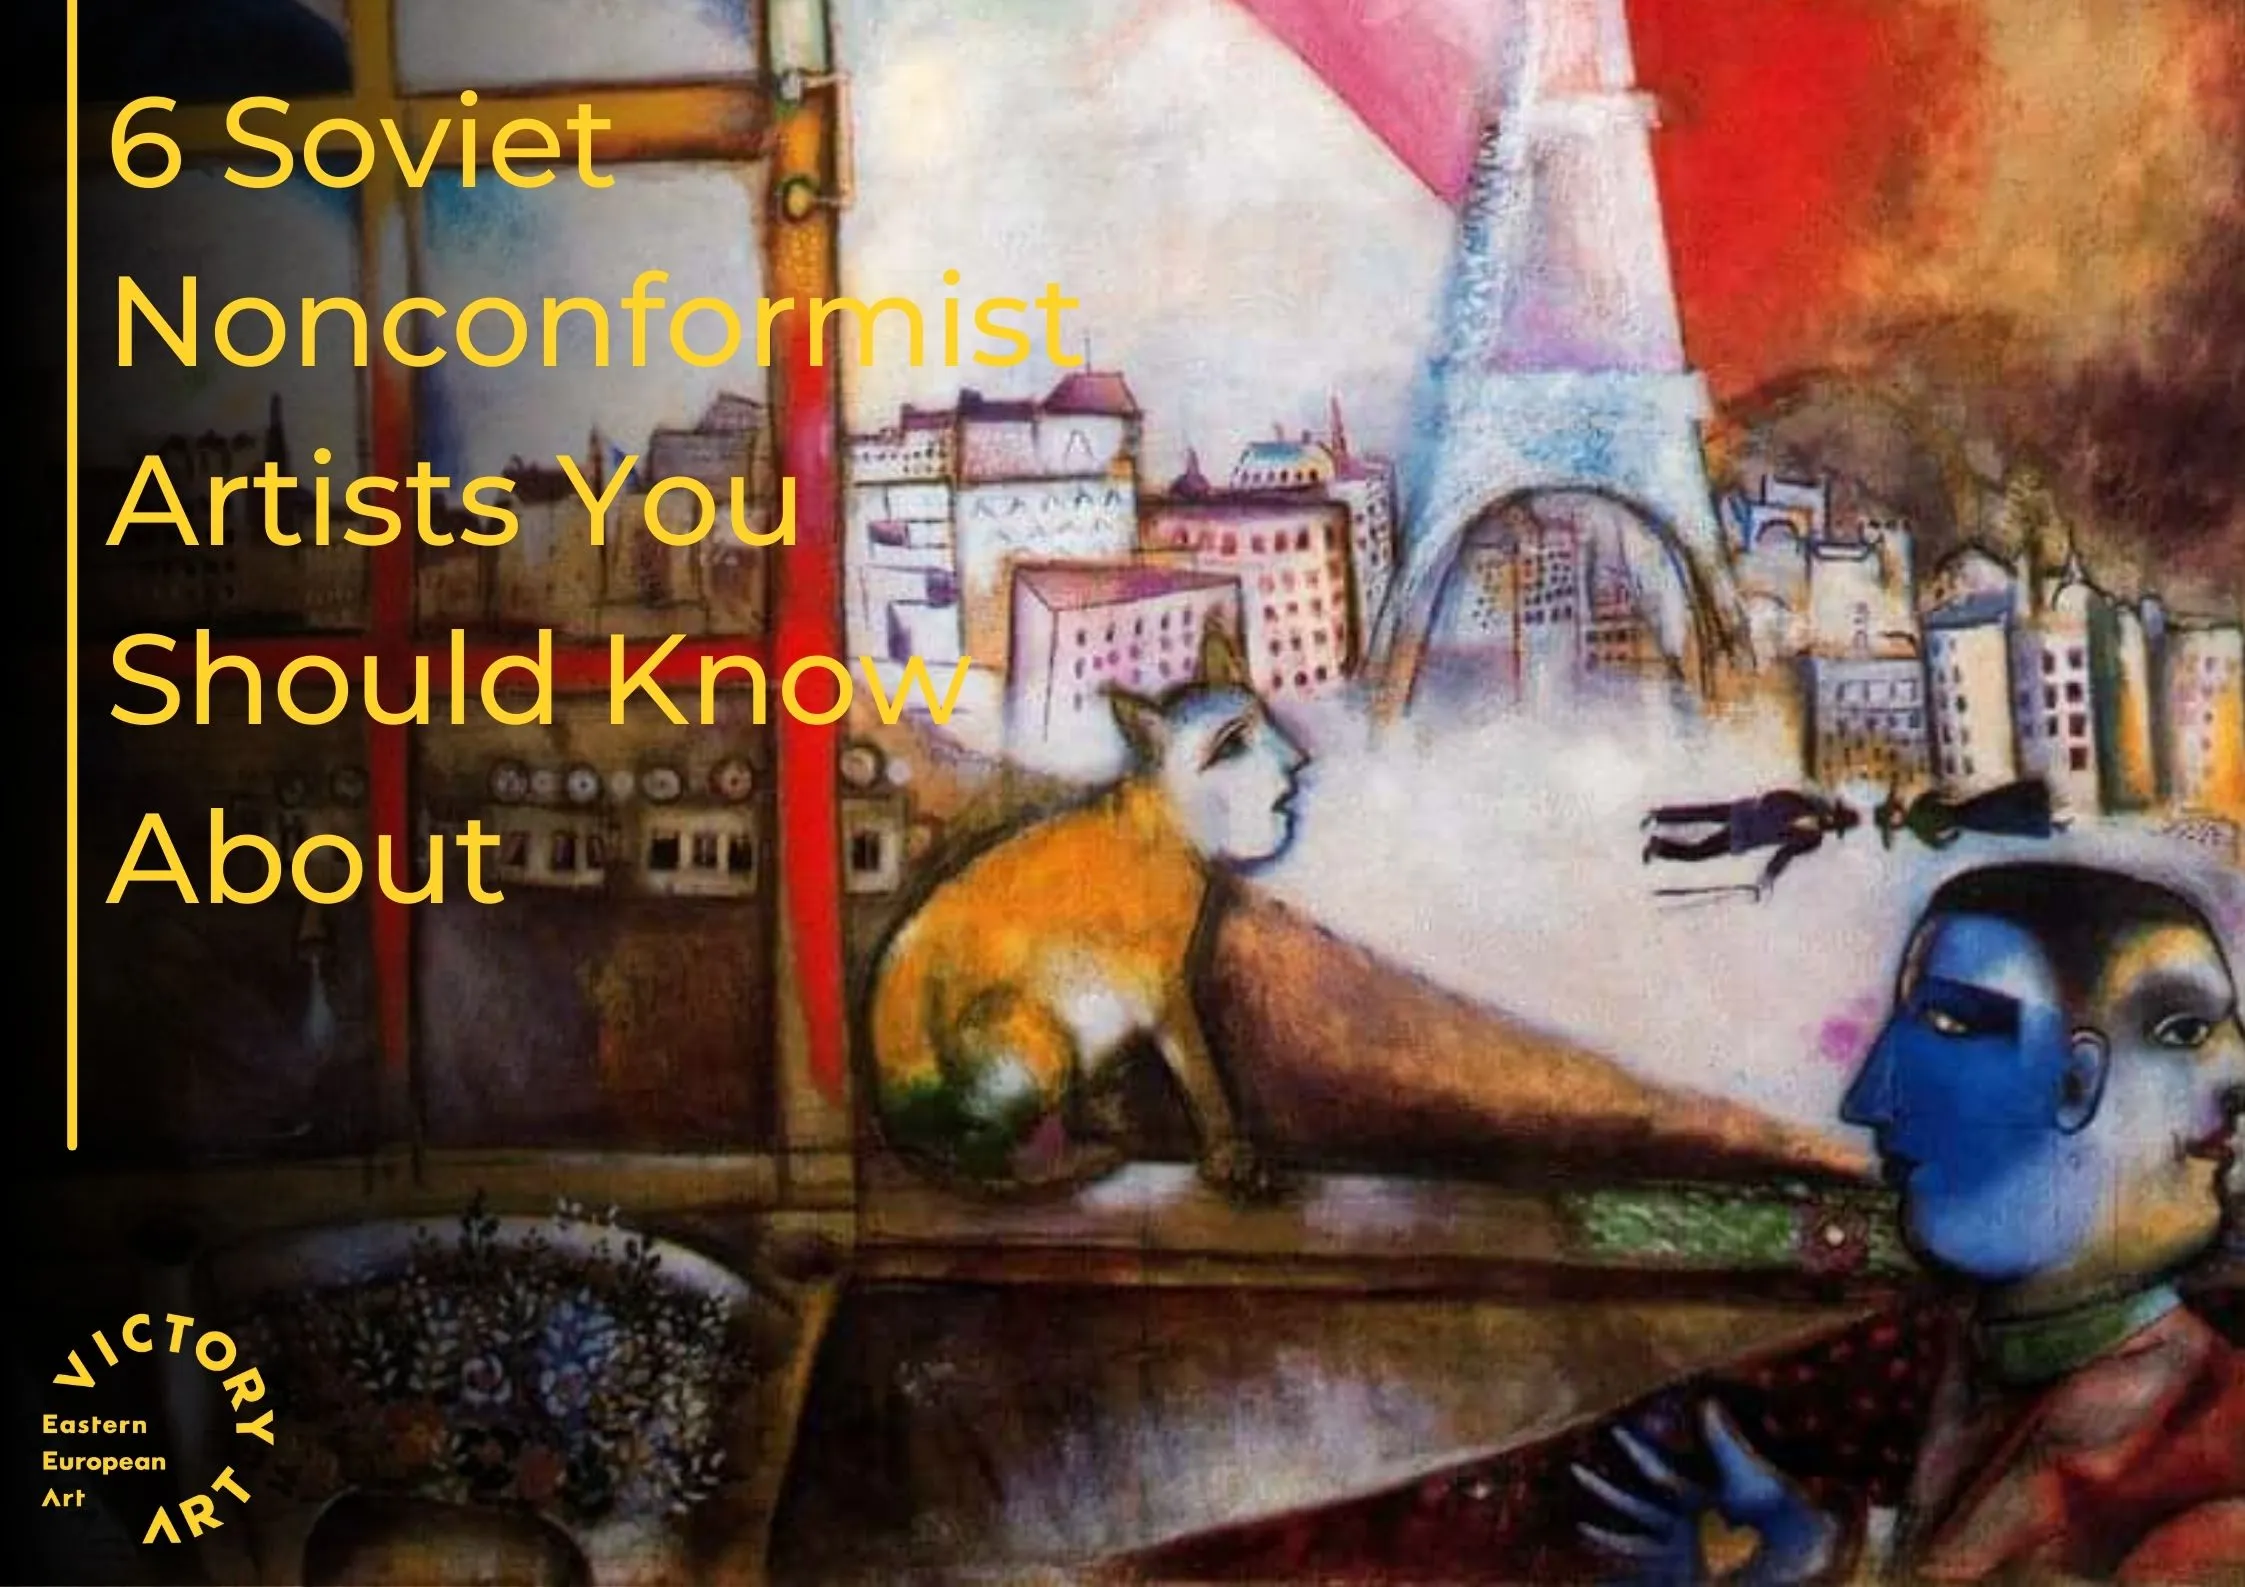 6 Soviet Nonconformist Artists You Should Know About